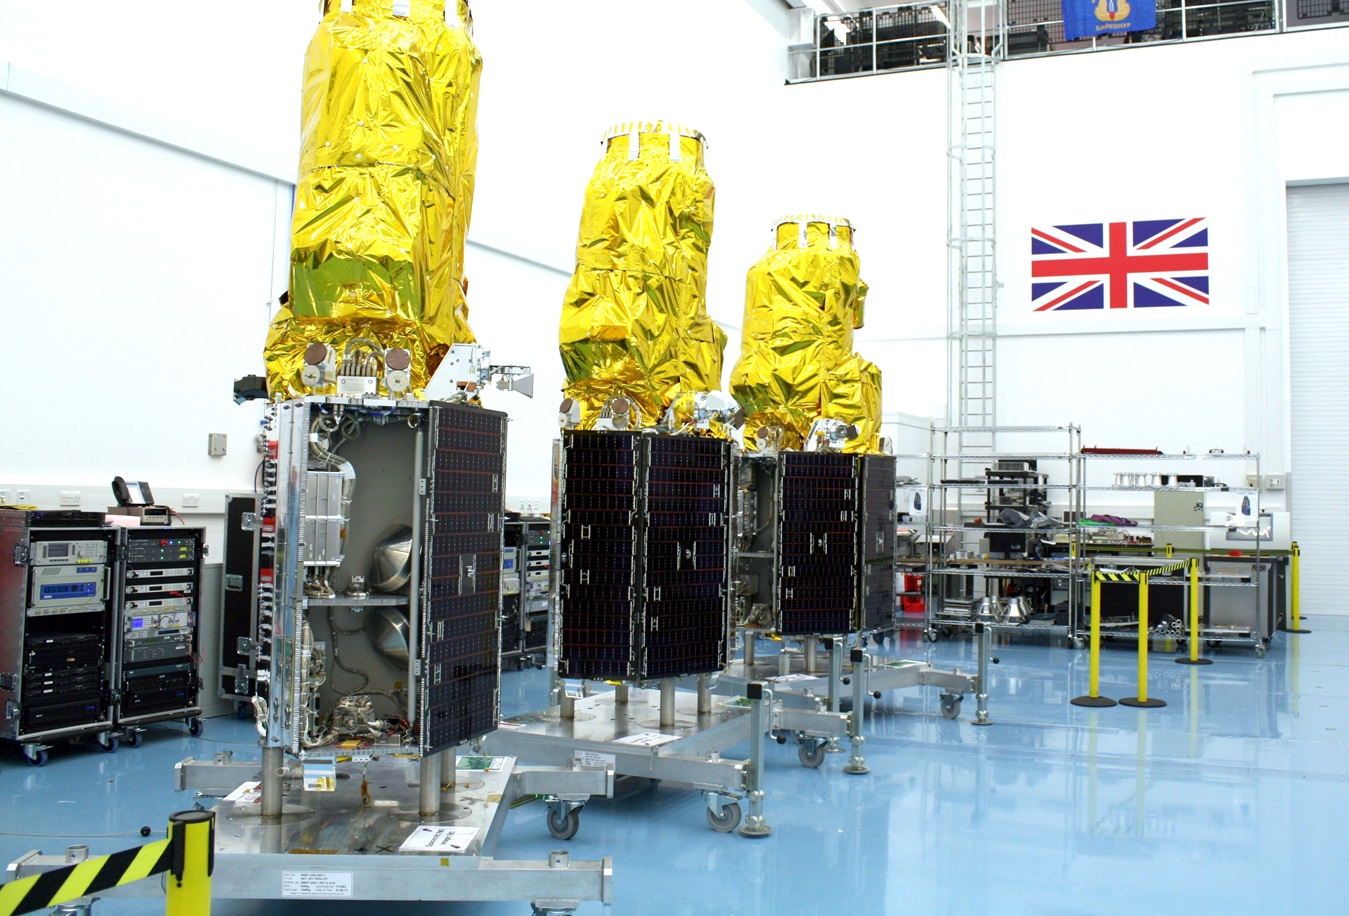 Fot. Surrey Satellite Technology Limited / sstl.co.uk